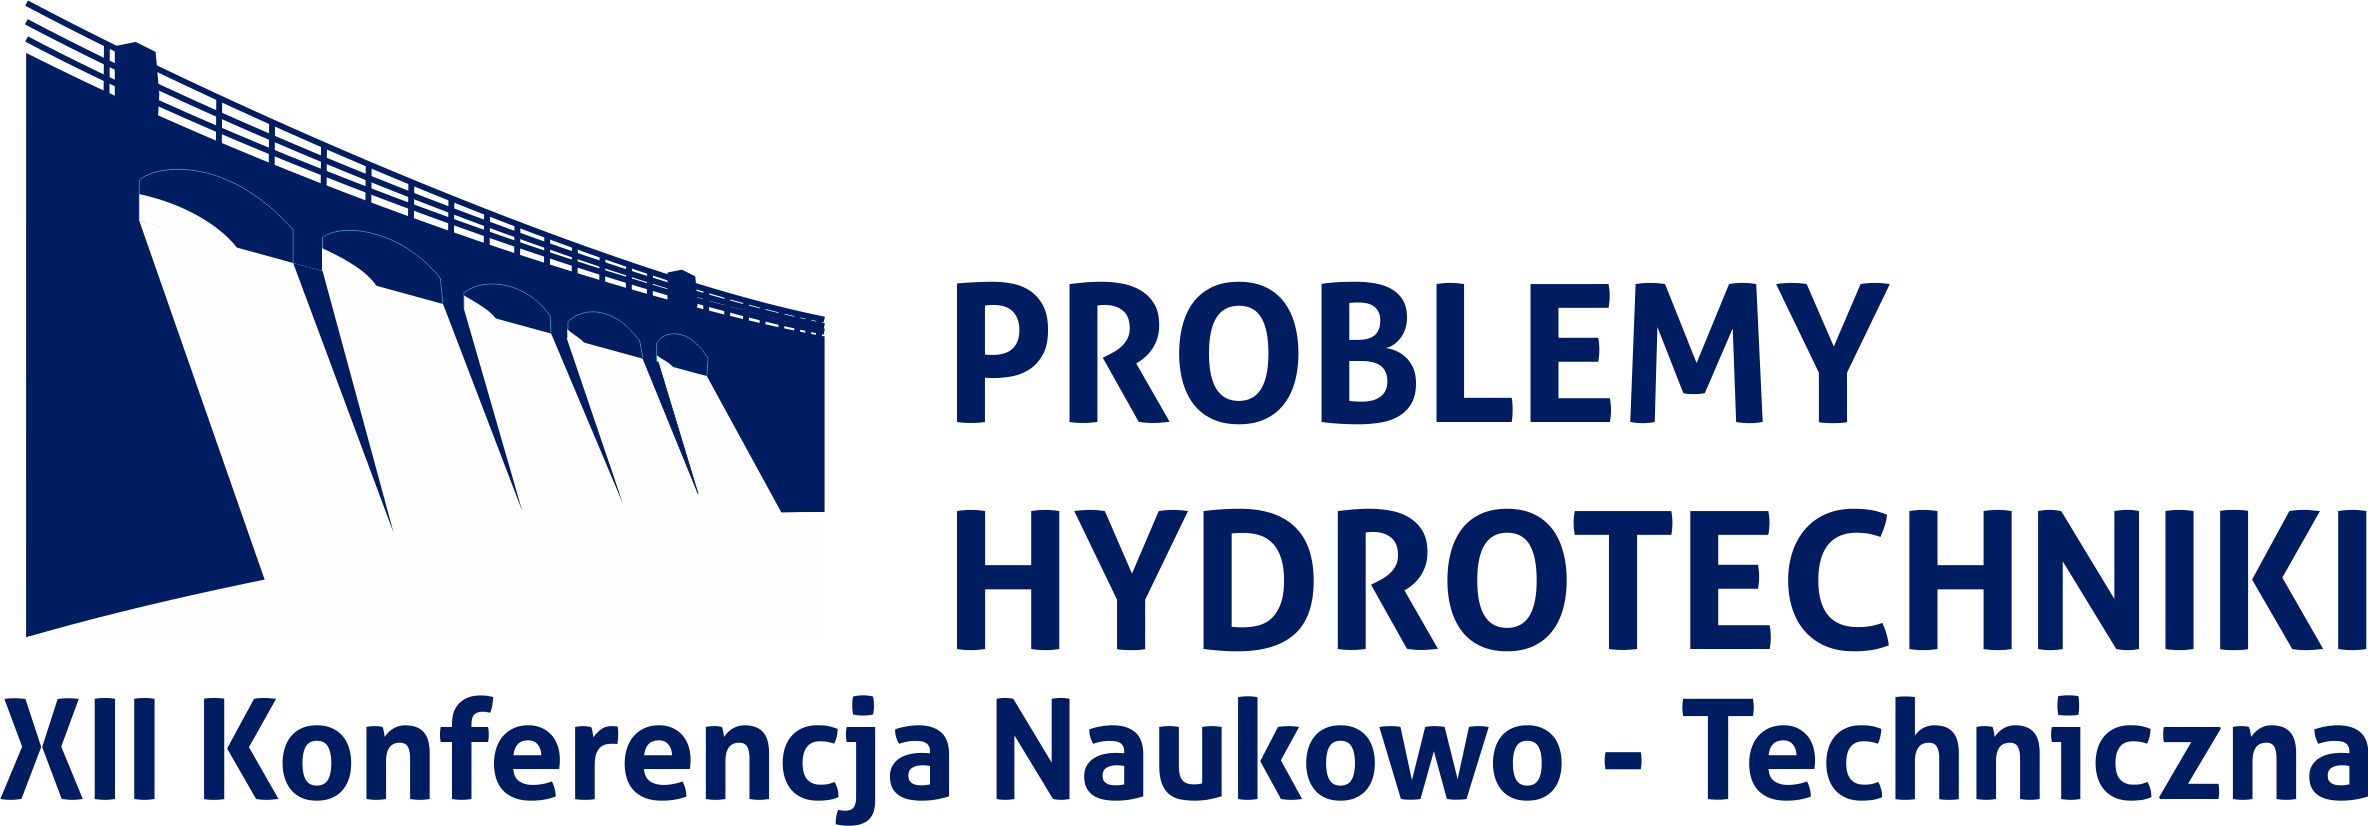 Konferencja Naukowo-Techniczna Problemy Hydrotechniki